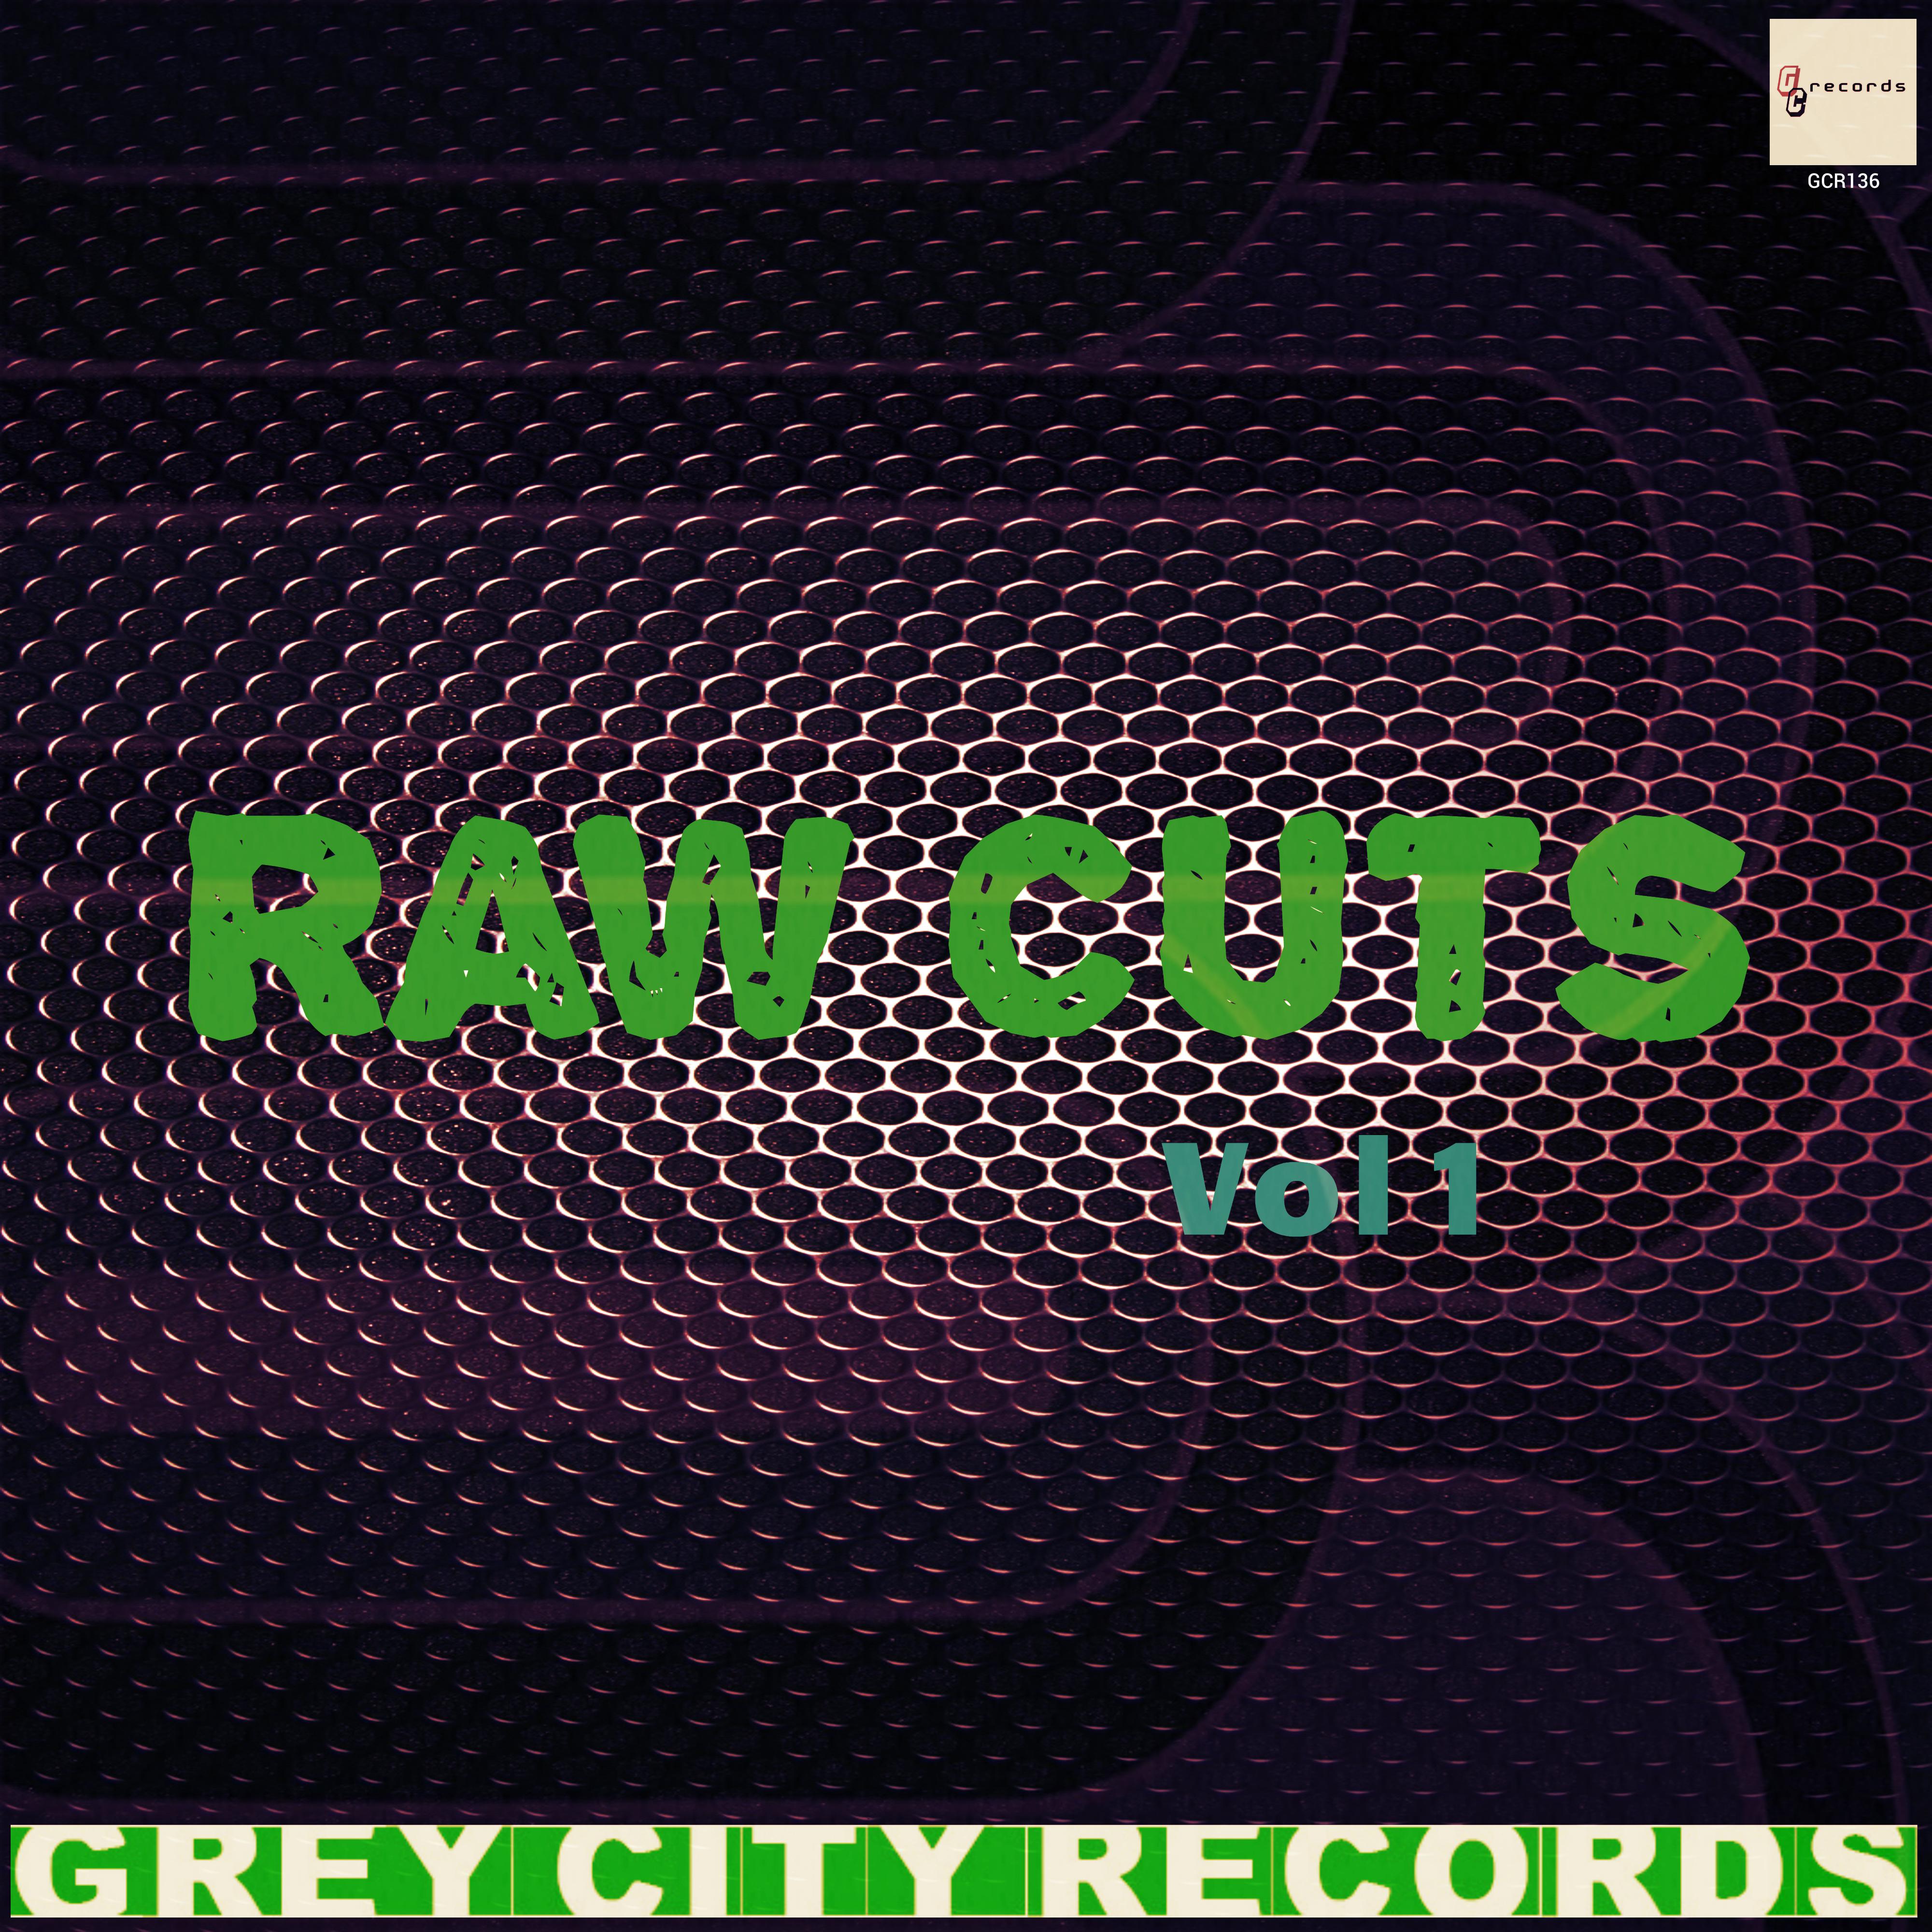 Raw Cuts, Vol. 1